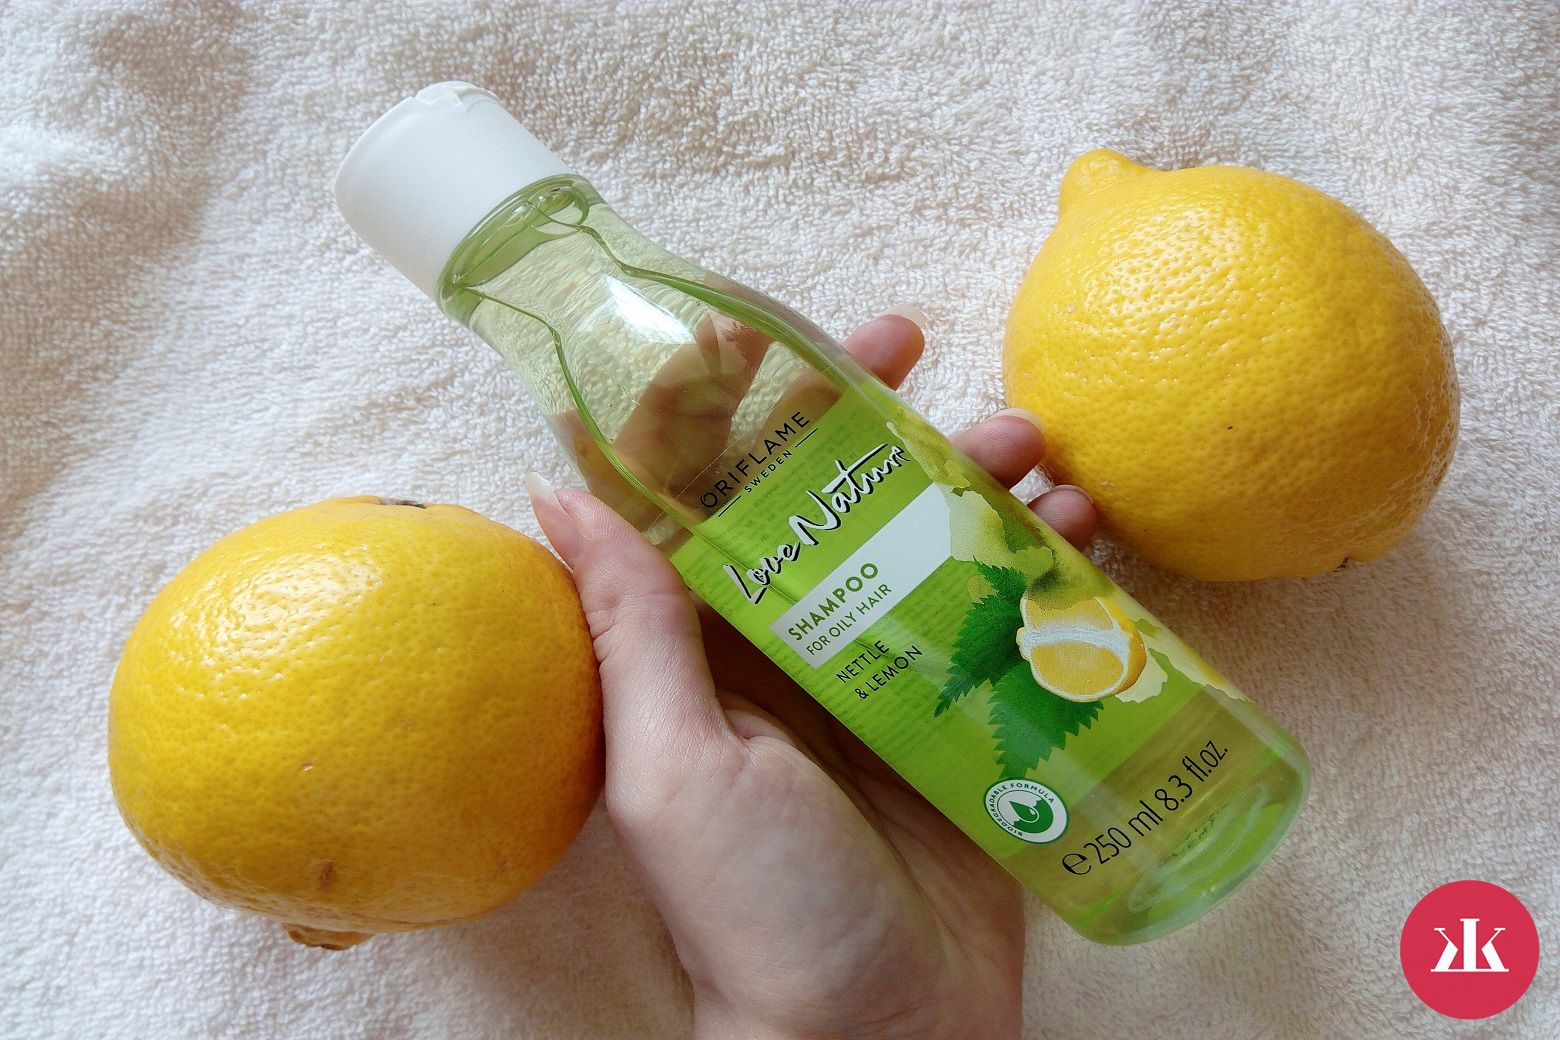 Šampón s žihľavou a citrónom